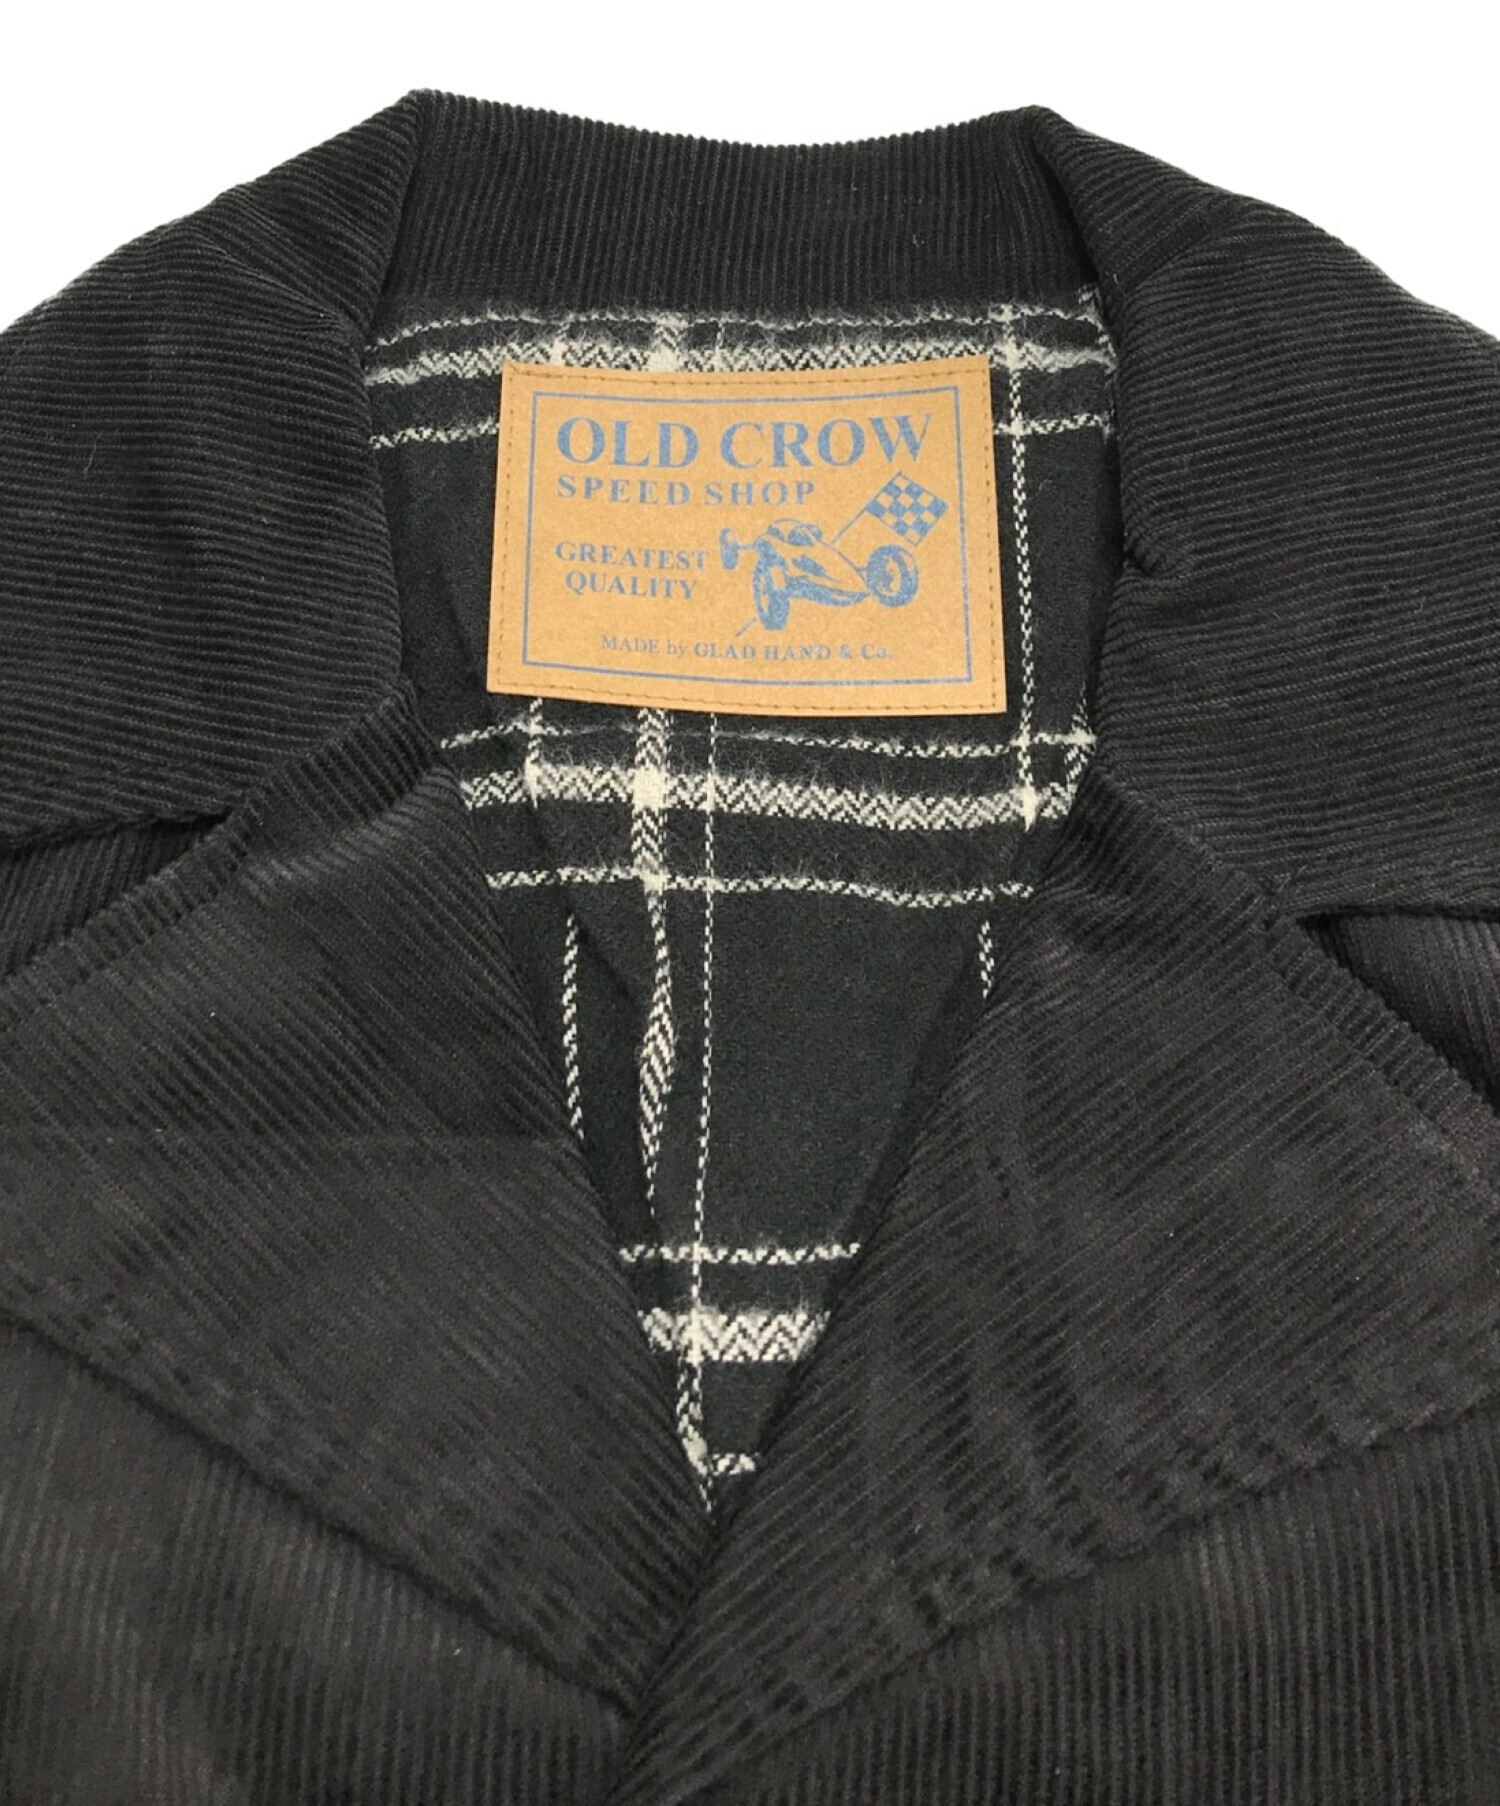 OLD CROW (オールドクロウ) Speed Shop Coat / スピードショップコート / コーデュロイコート ブラック サイズ:S